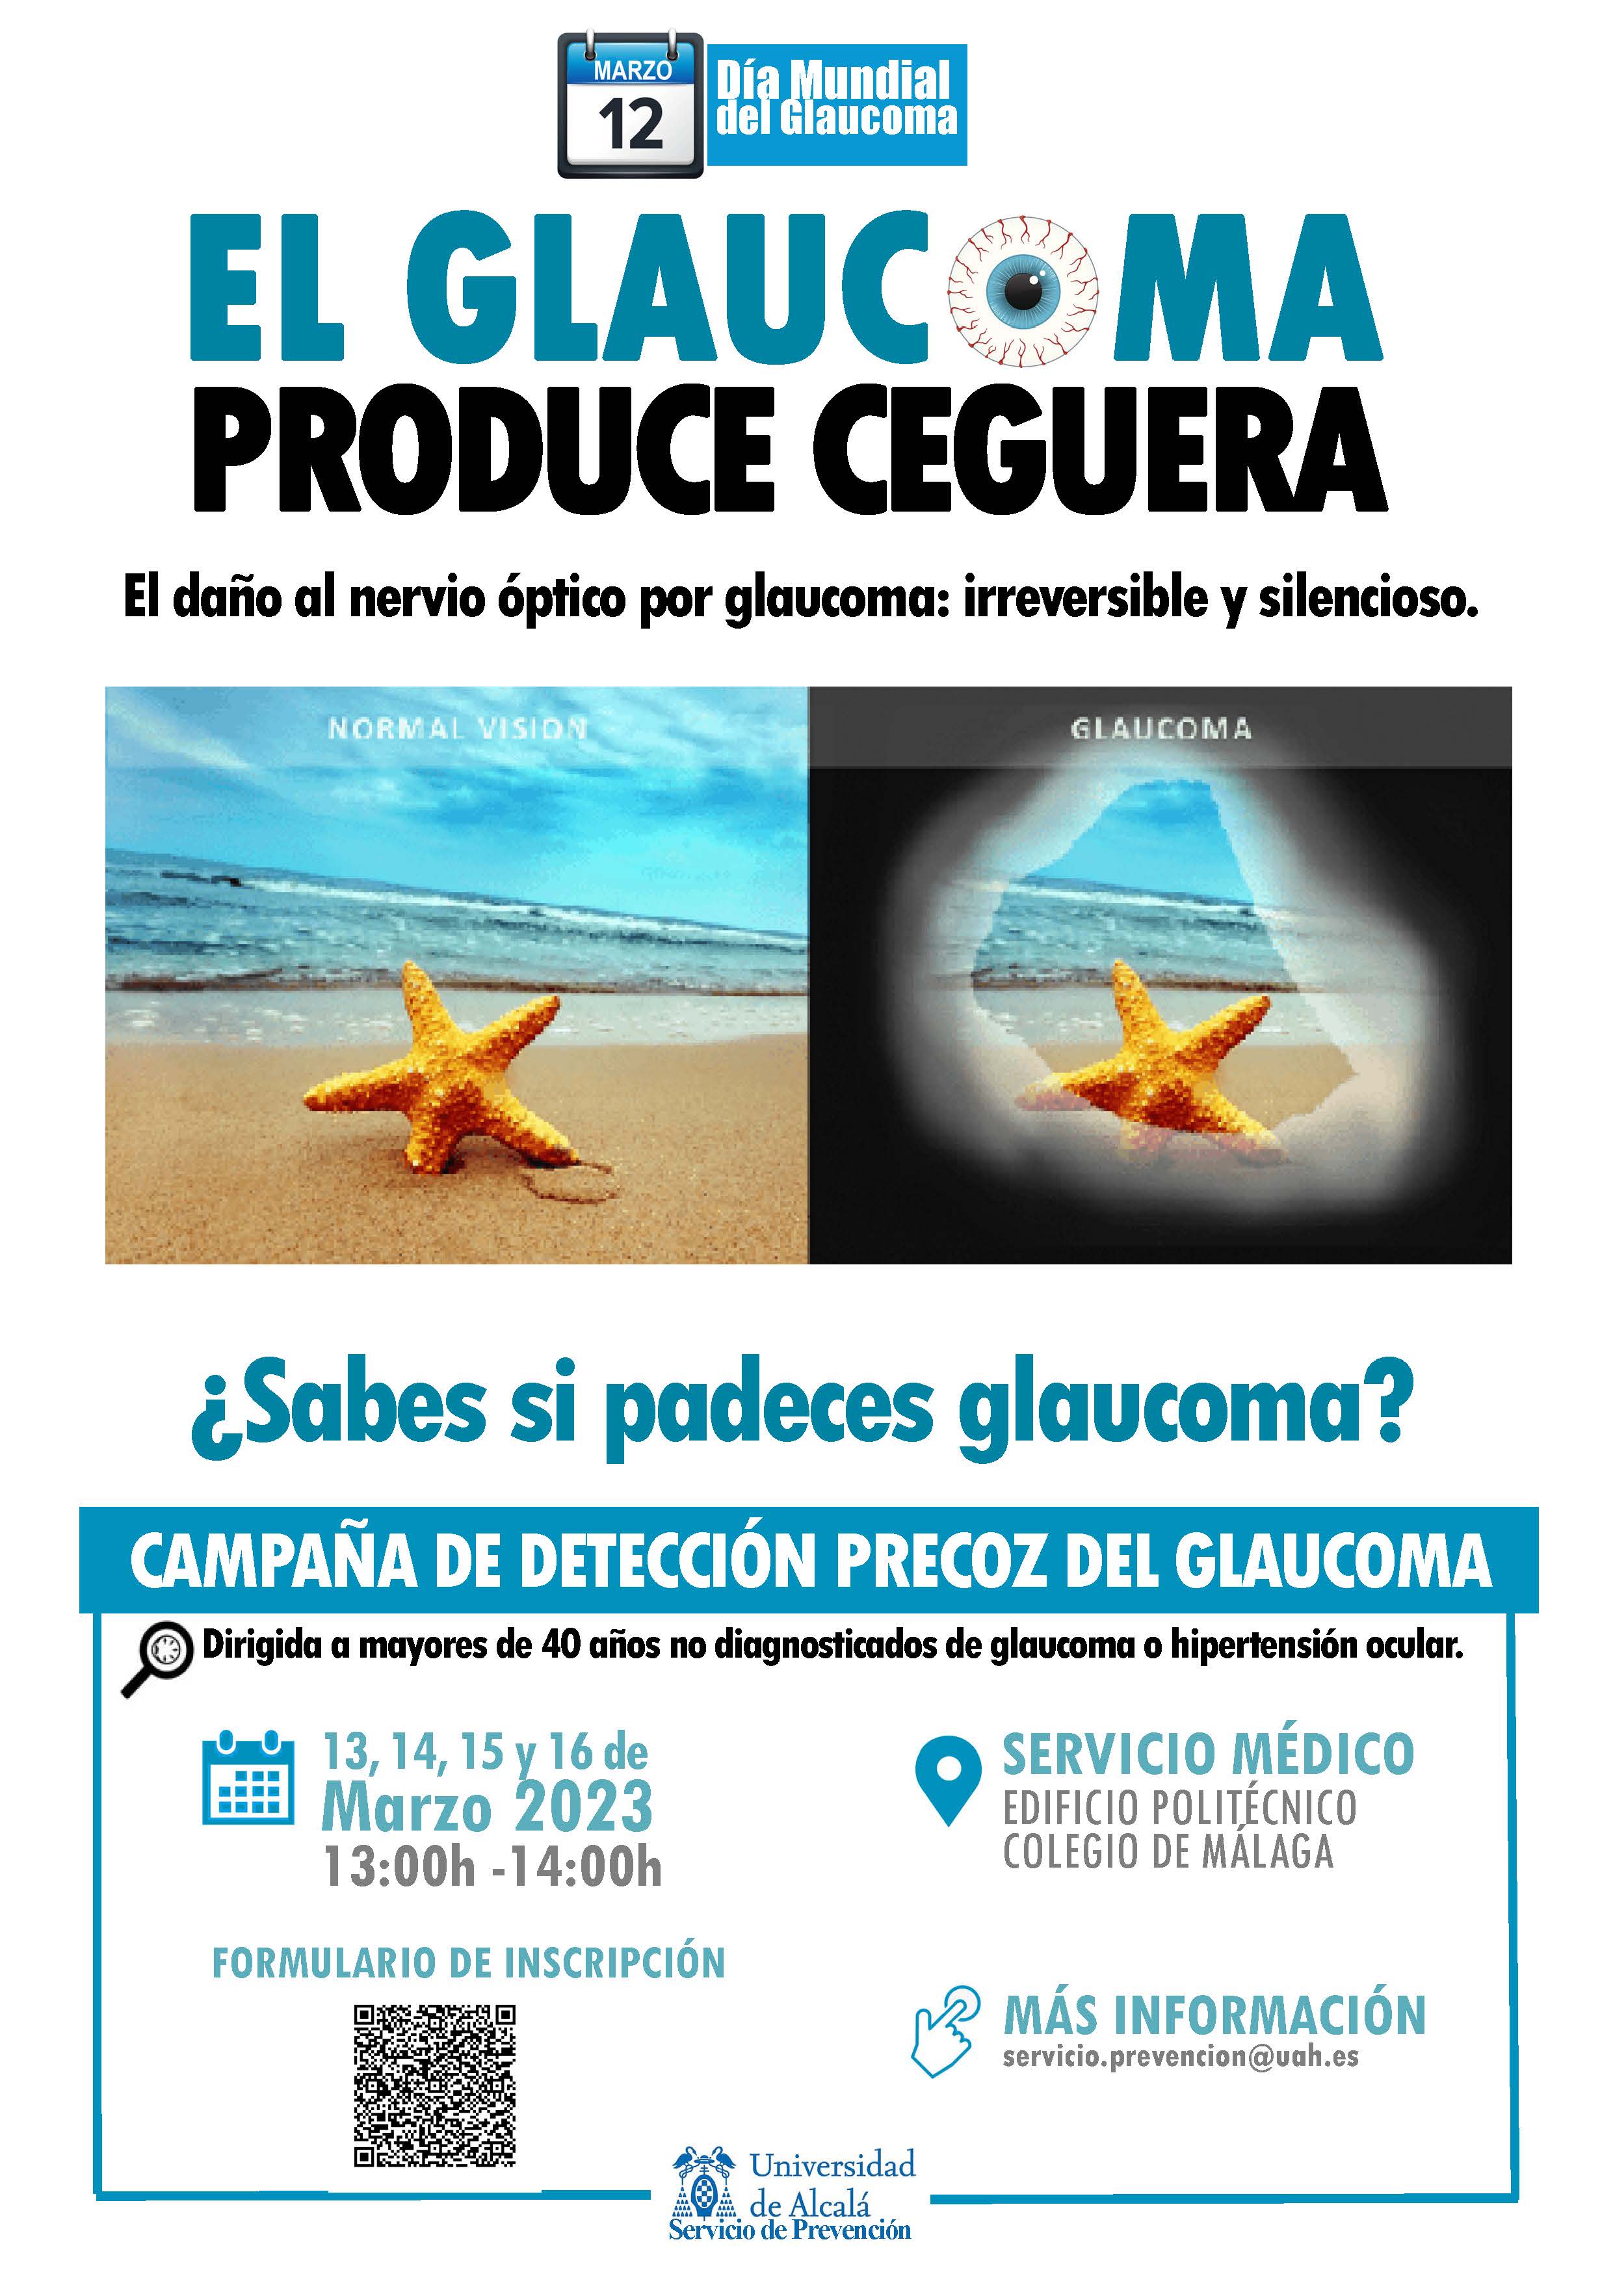 data-cke-saved-src=https://www1.uah.es/pdf/noticias/prevencion/docs/glaucoma.jpg